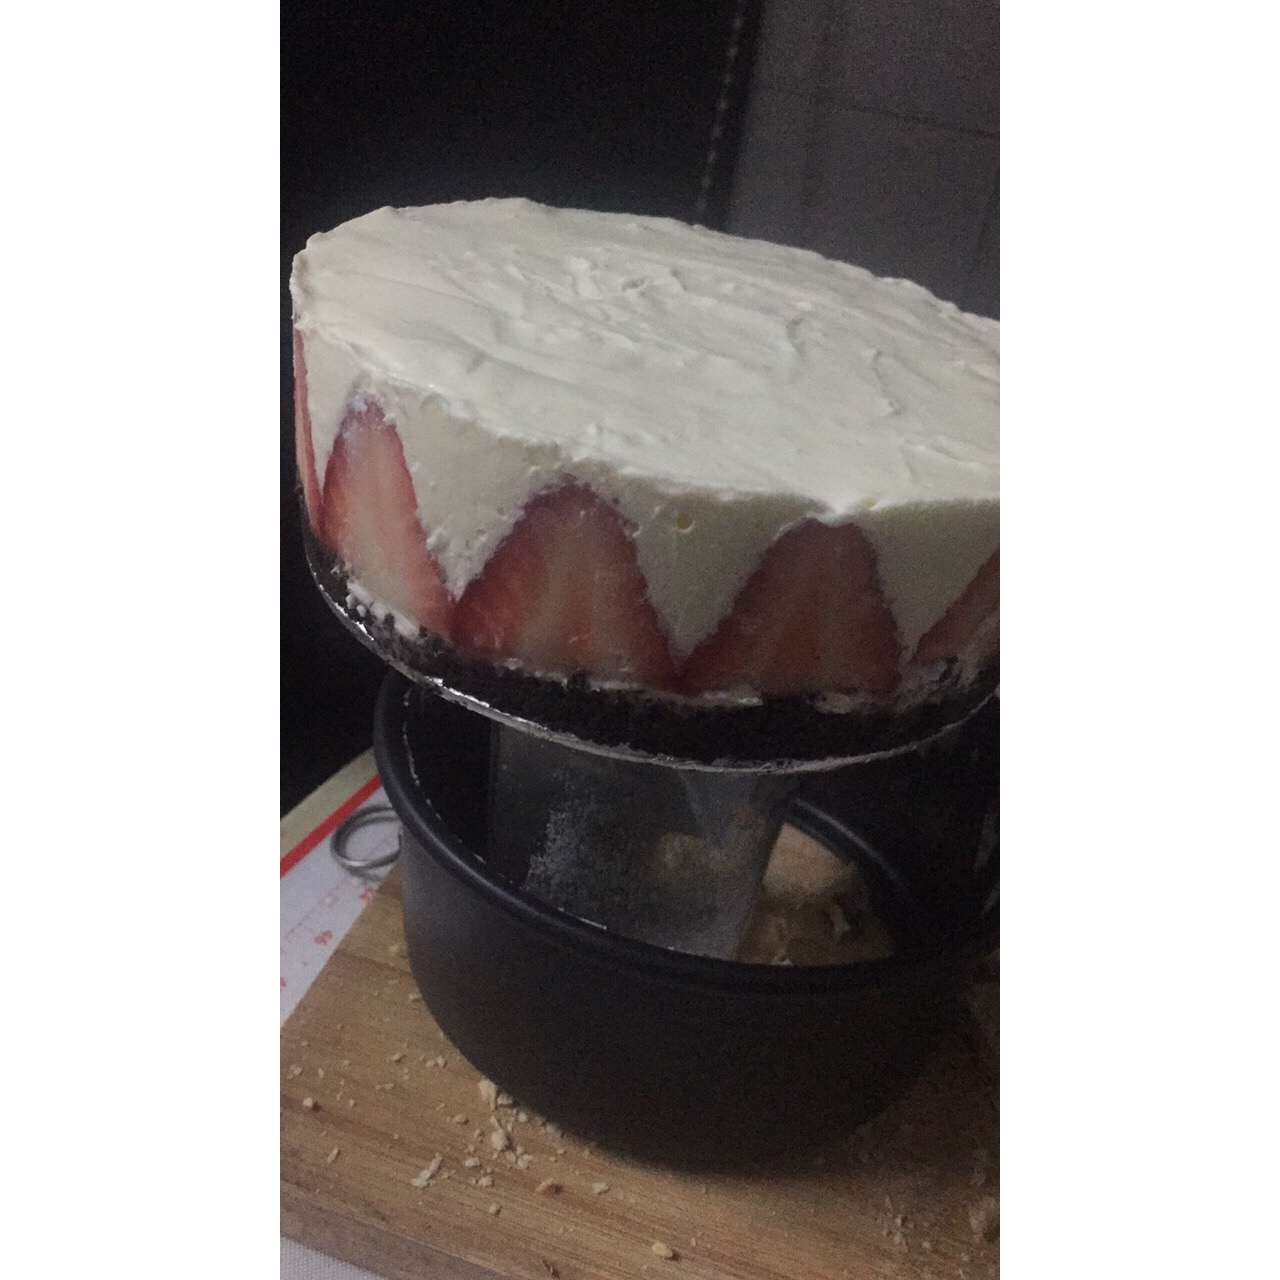 草莓芝士蛋糕